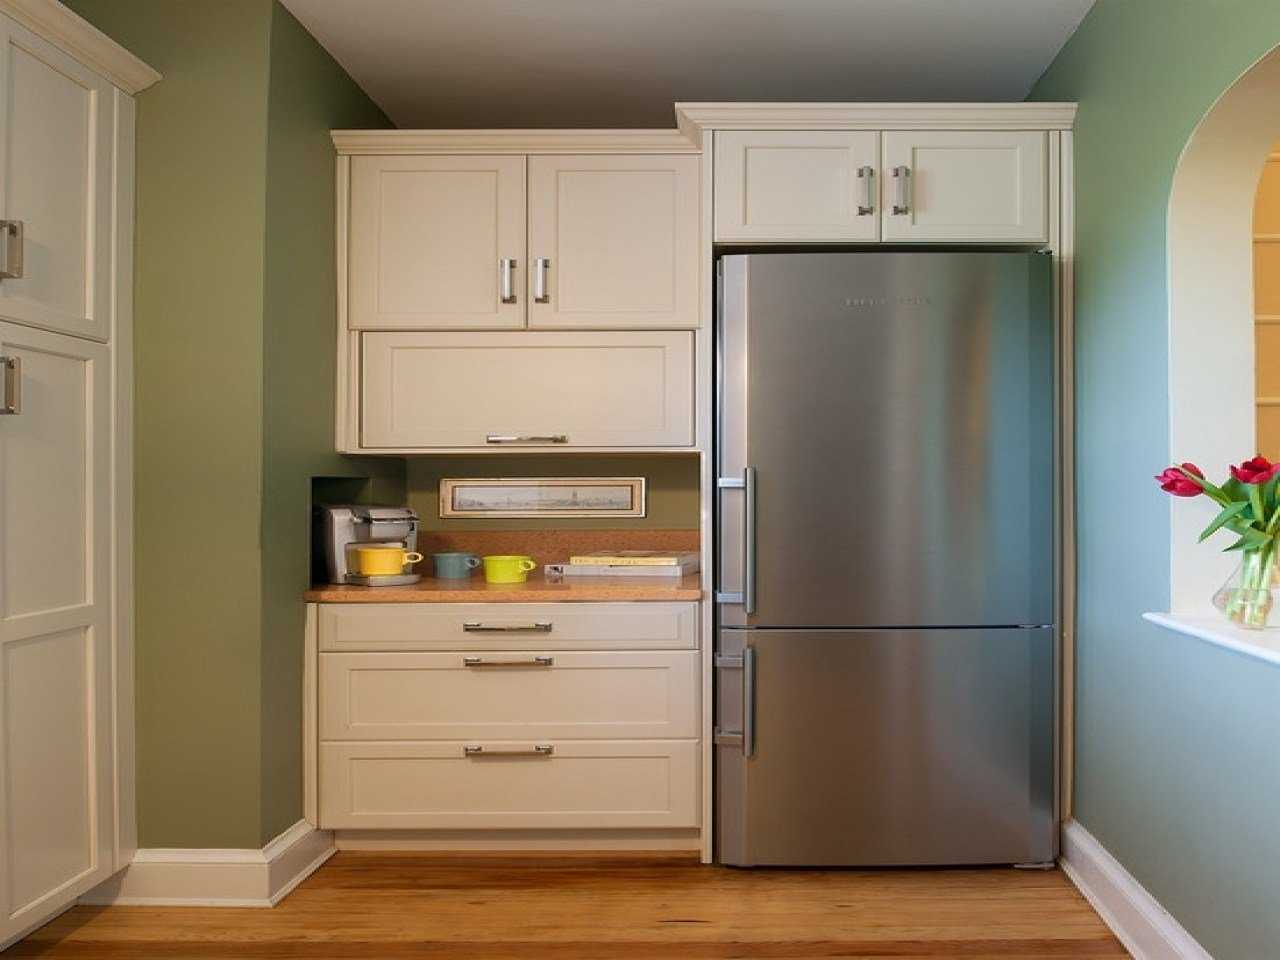 Как встроить обычный холодильник в шкаф своими руками: инструкция